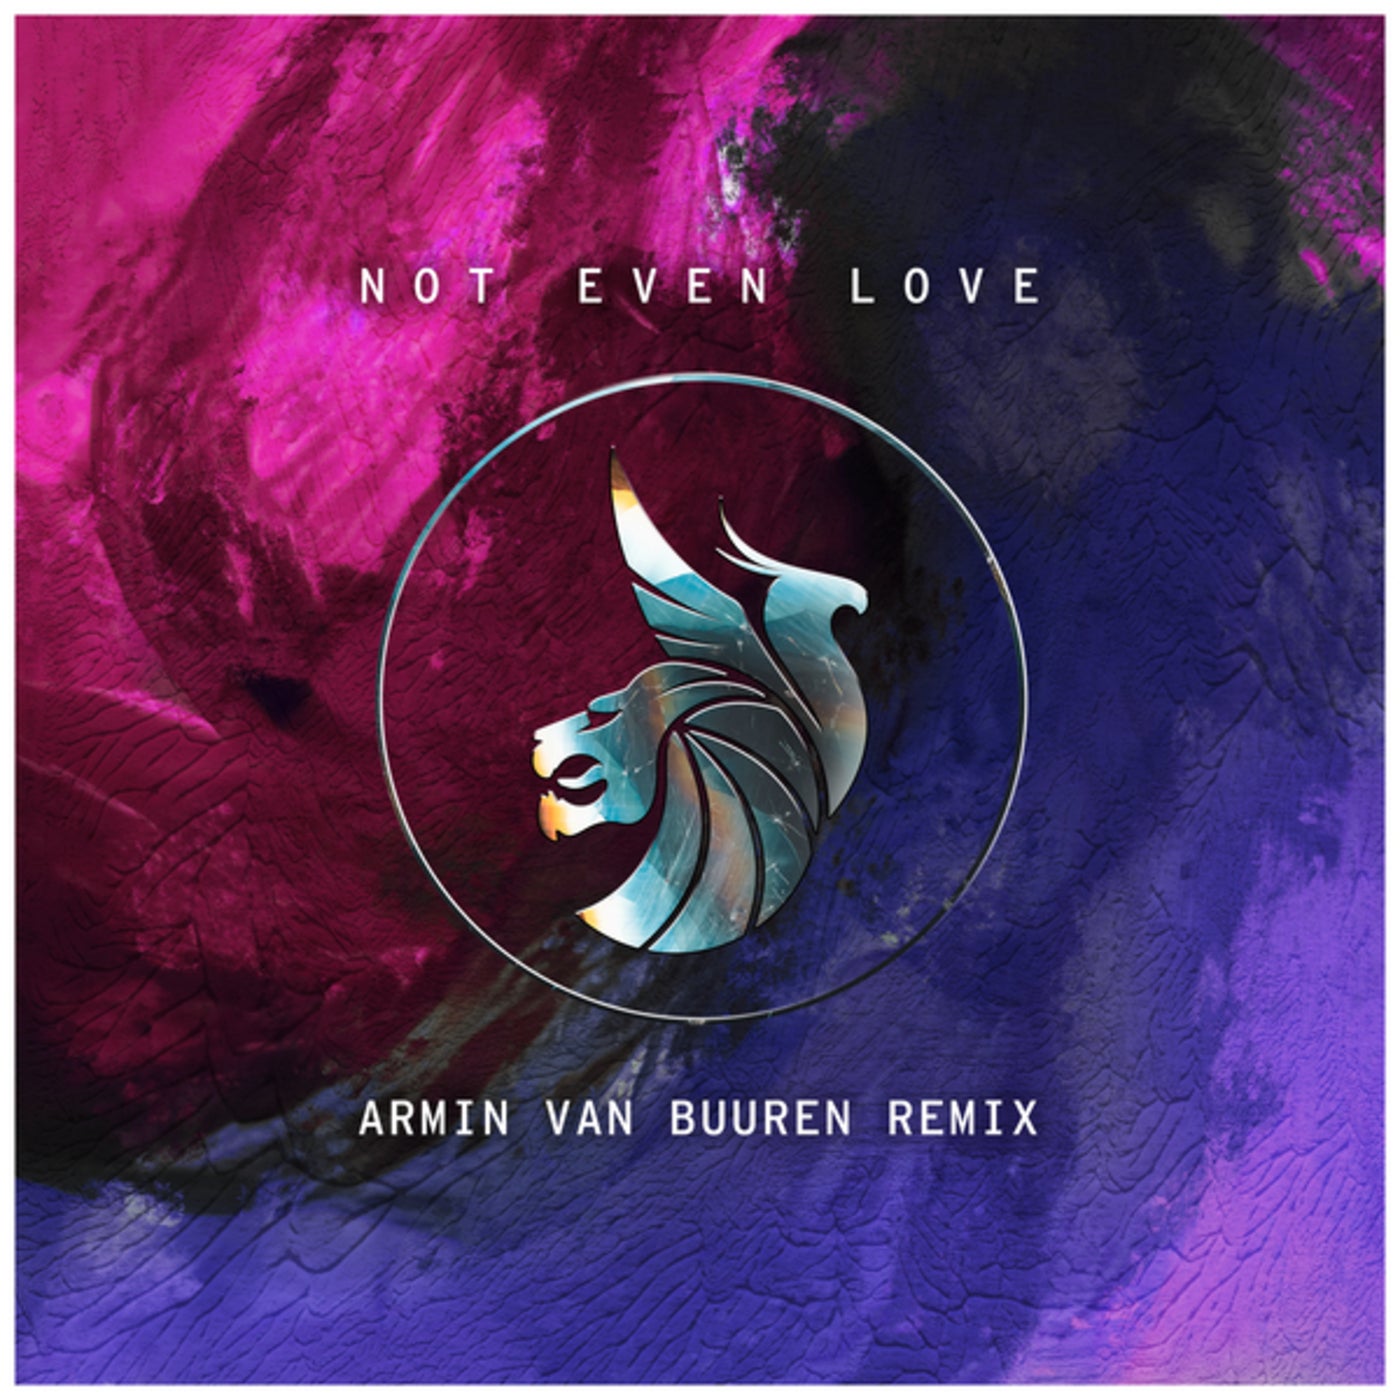 Not Even Love (Armin van Buuren Remix)